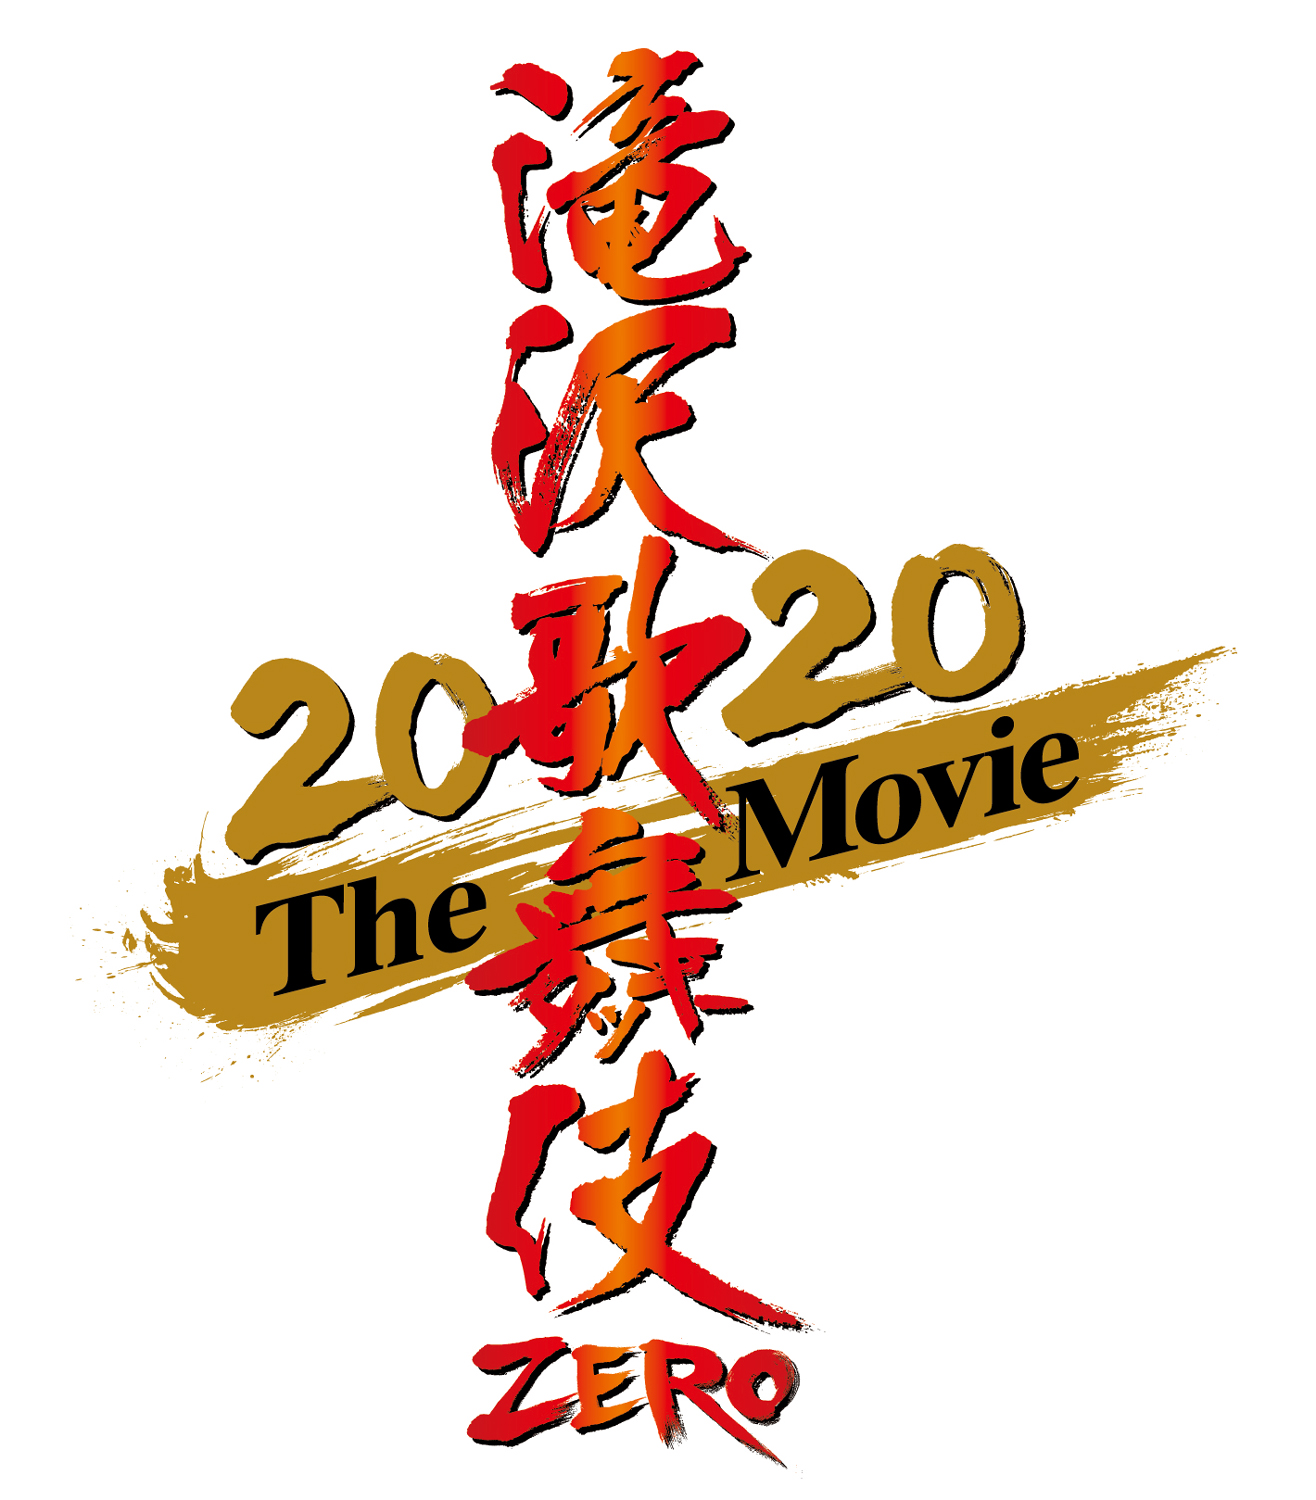 滝沢歌舞伎 ZERO 2020 The Movie